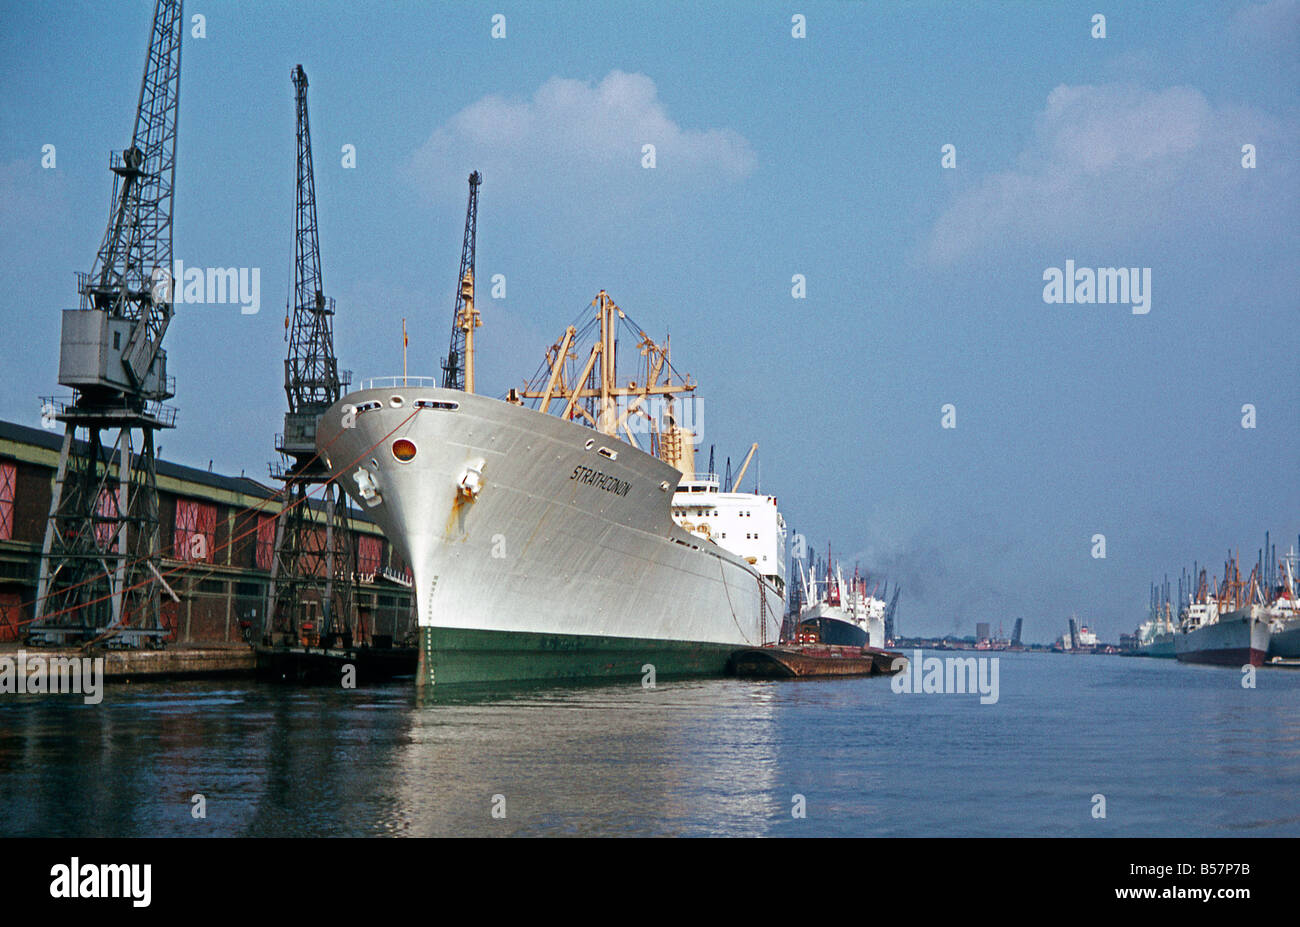 Navire marchand Strathconon, Royal Docks, l'Est de Londres, août 1969 Banque D'Images